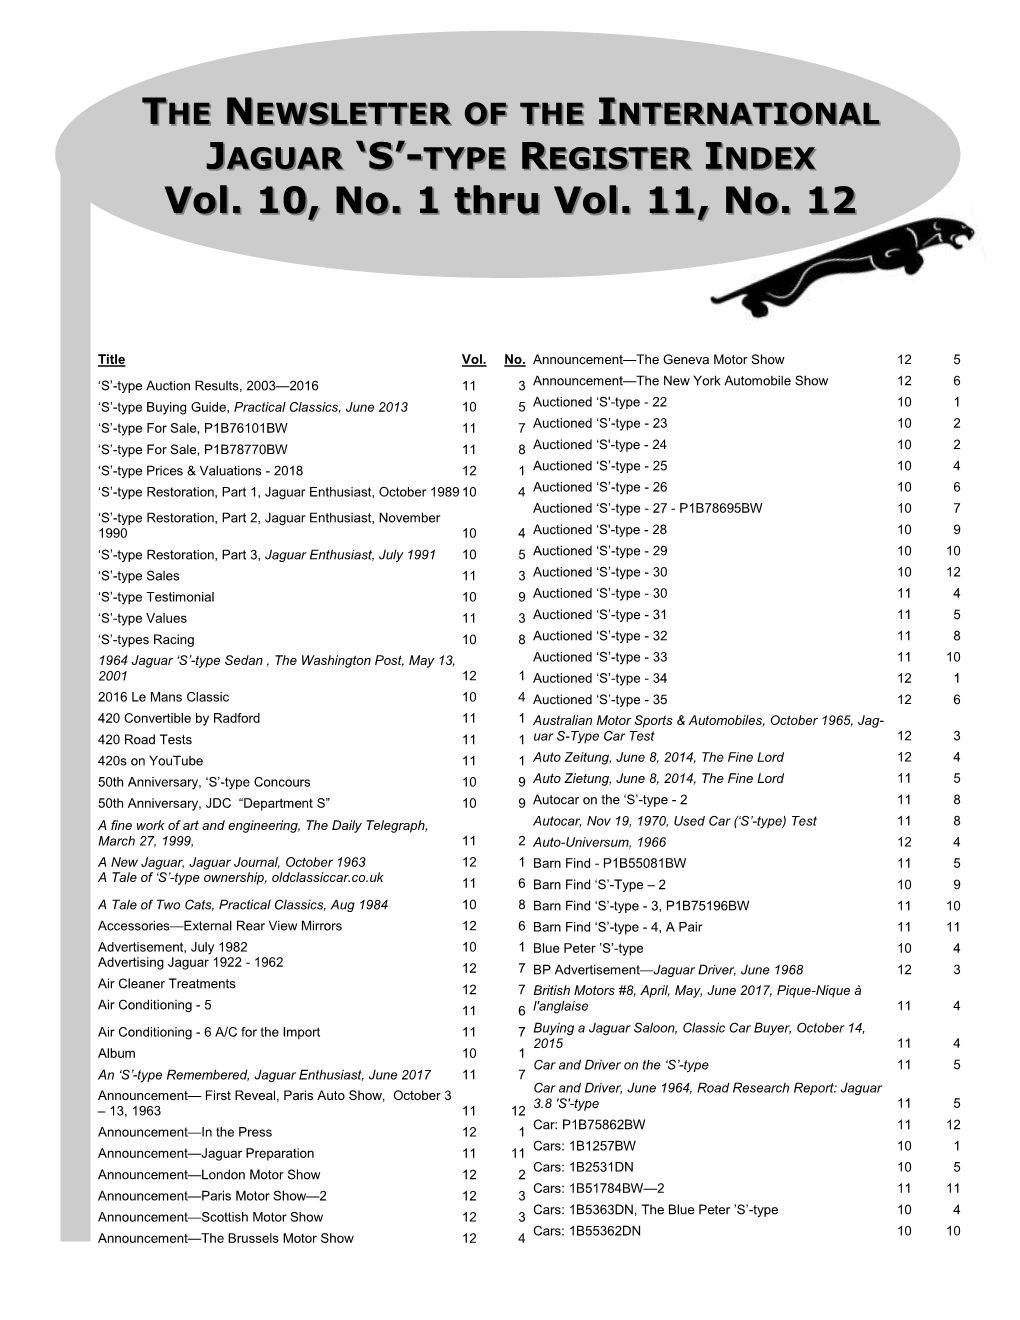 JAGUAR 'S'-TYPE REGISTER INDEX Vol. 10, No. 1 Thru Vol. 11, No